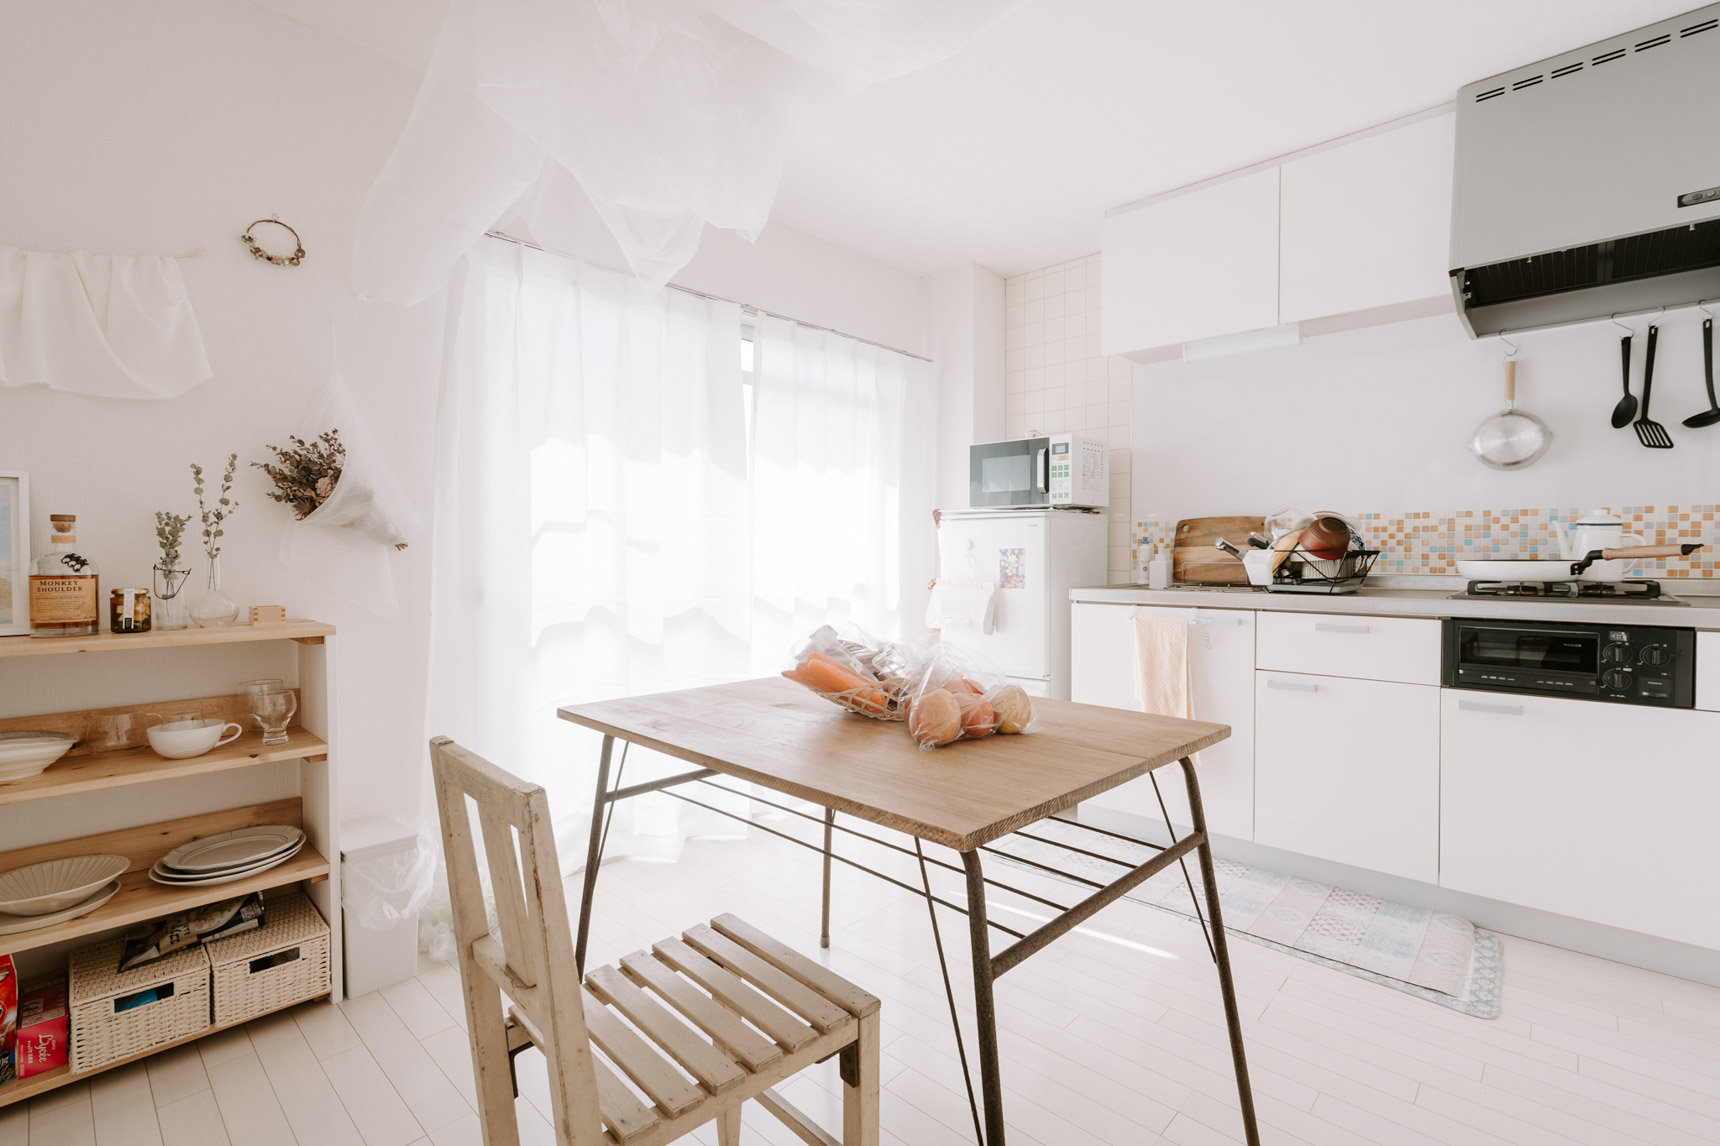 ふんわり優しい白と差し色で整えられた、カフェのようなナチュラルスタイルの一人暮らしをされている方のお部屋。